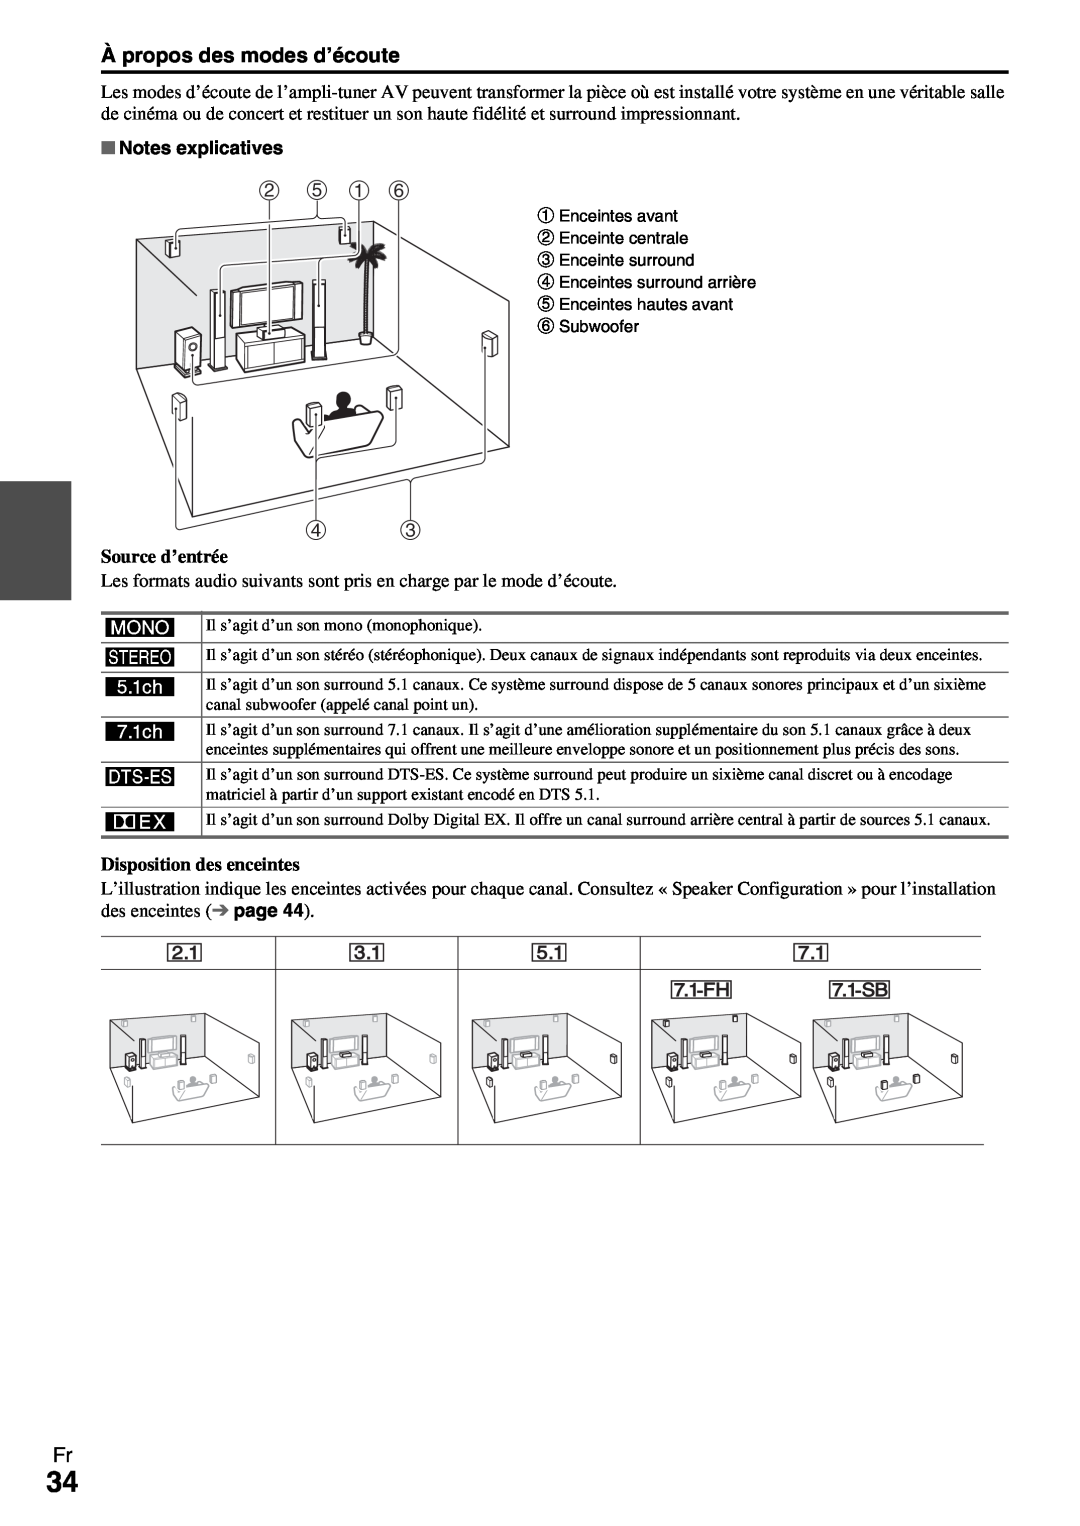 Onkyo HT-R990 instruction manual À propos des modes d’écoute, b e a f, Notes explicatives 